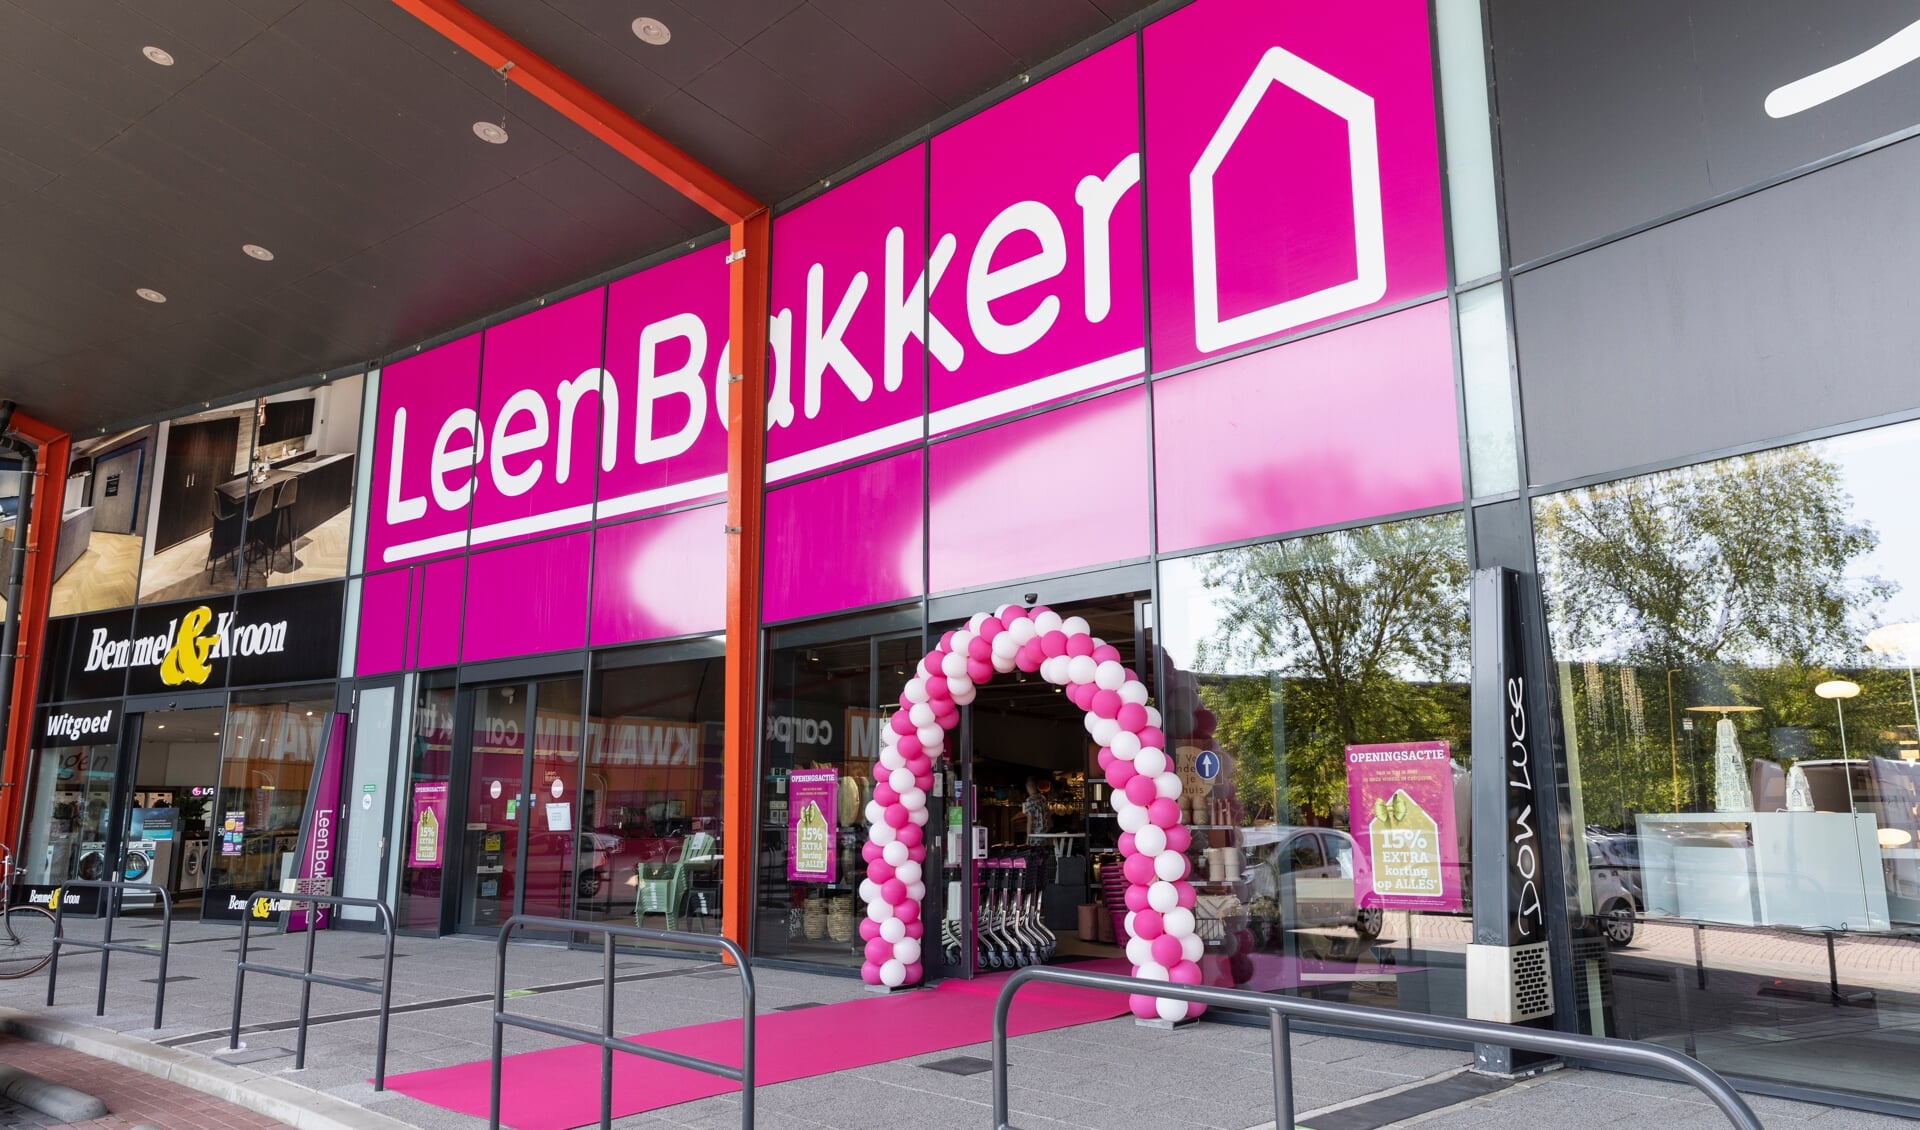 Serena salami Numeriek Leen Bakker opent vernieuwde winkel in Boulevard Cruquius - HCnieuws |  Nieuws uit de regio Hoofddorp